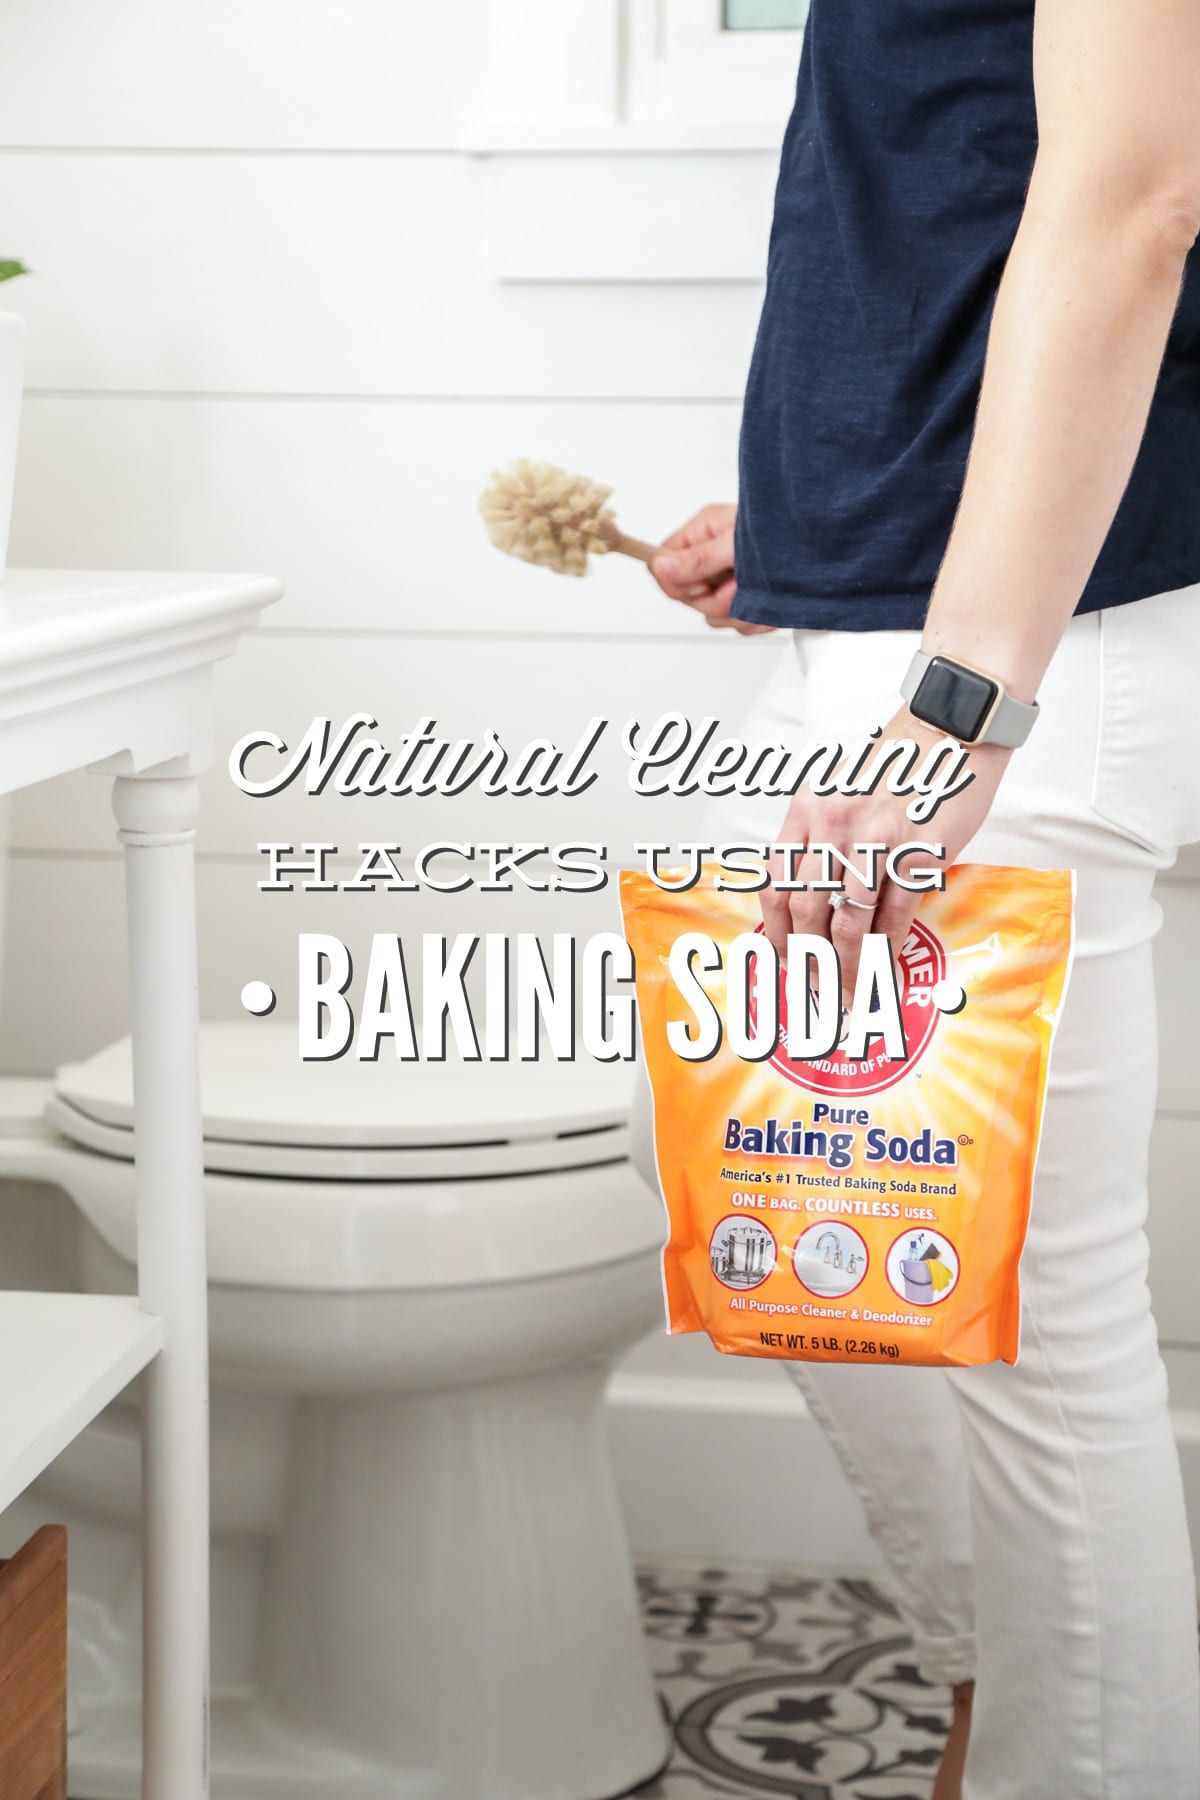 13 Natural Cleaning Hacks Using Baking Soda